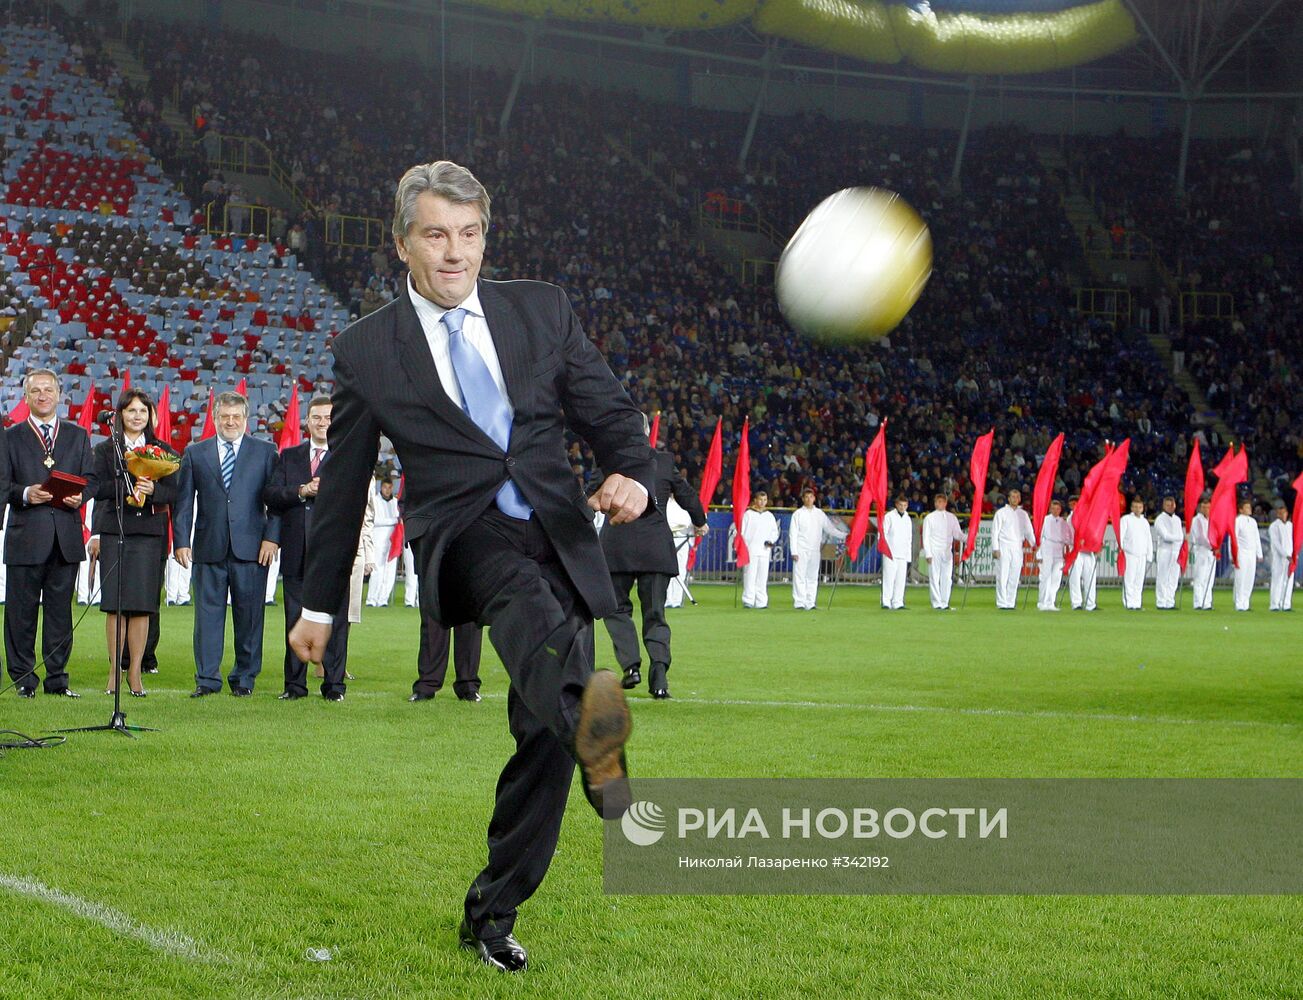 Президент Украины В. Ющенко на стадионе в Днепропетровске